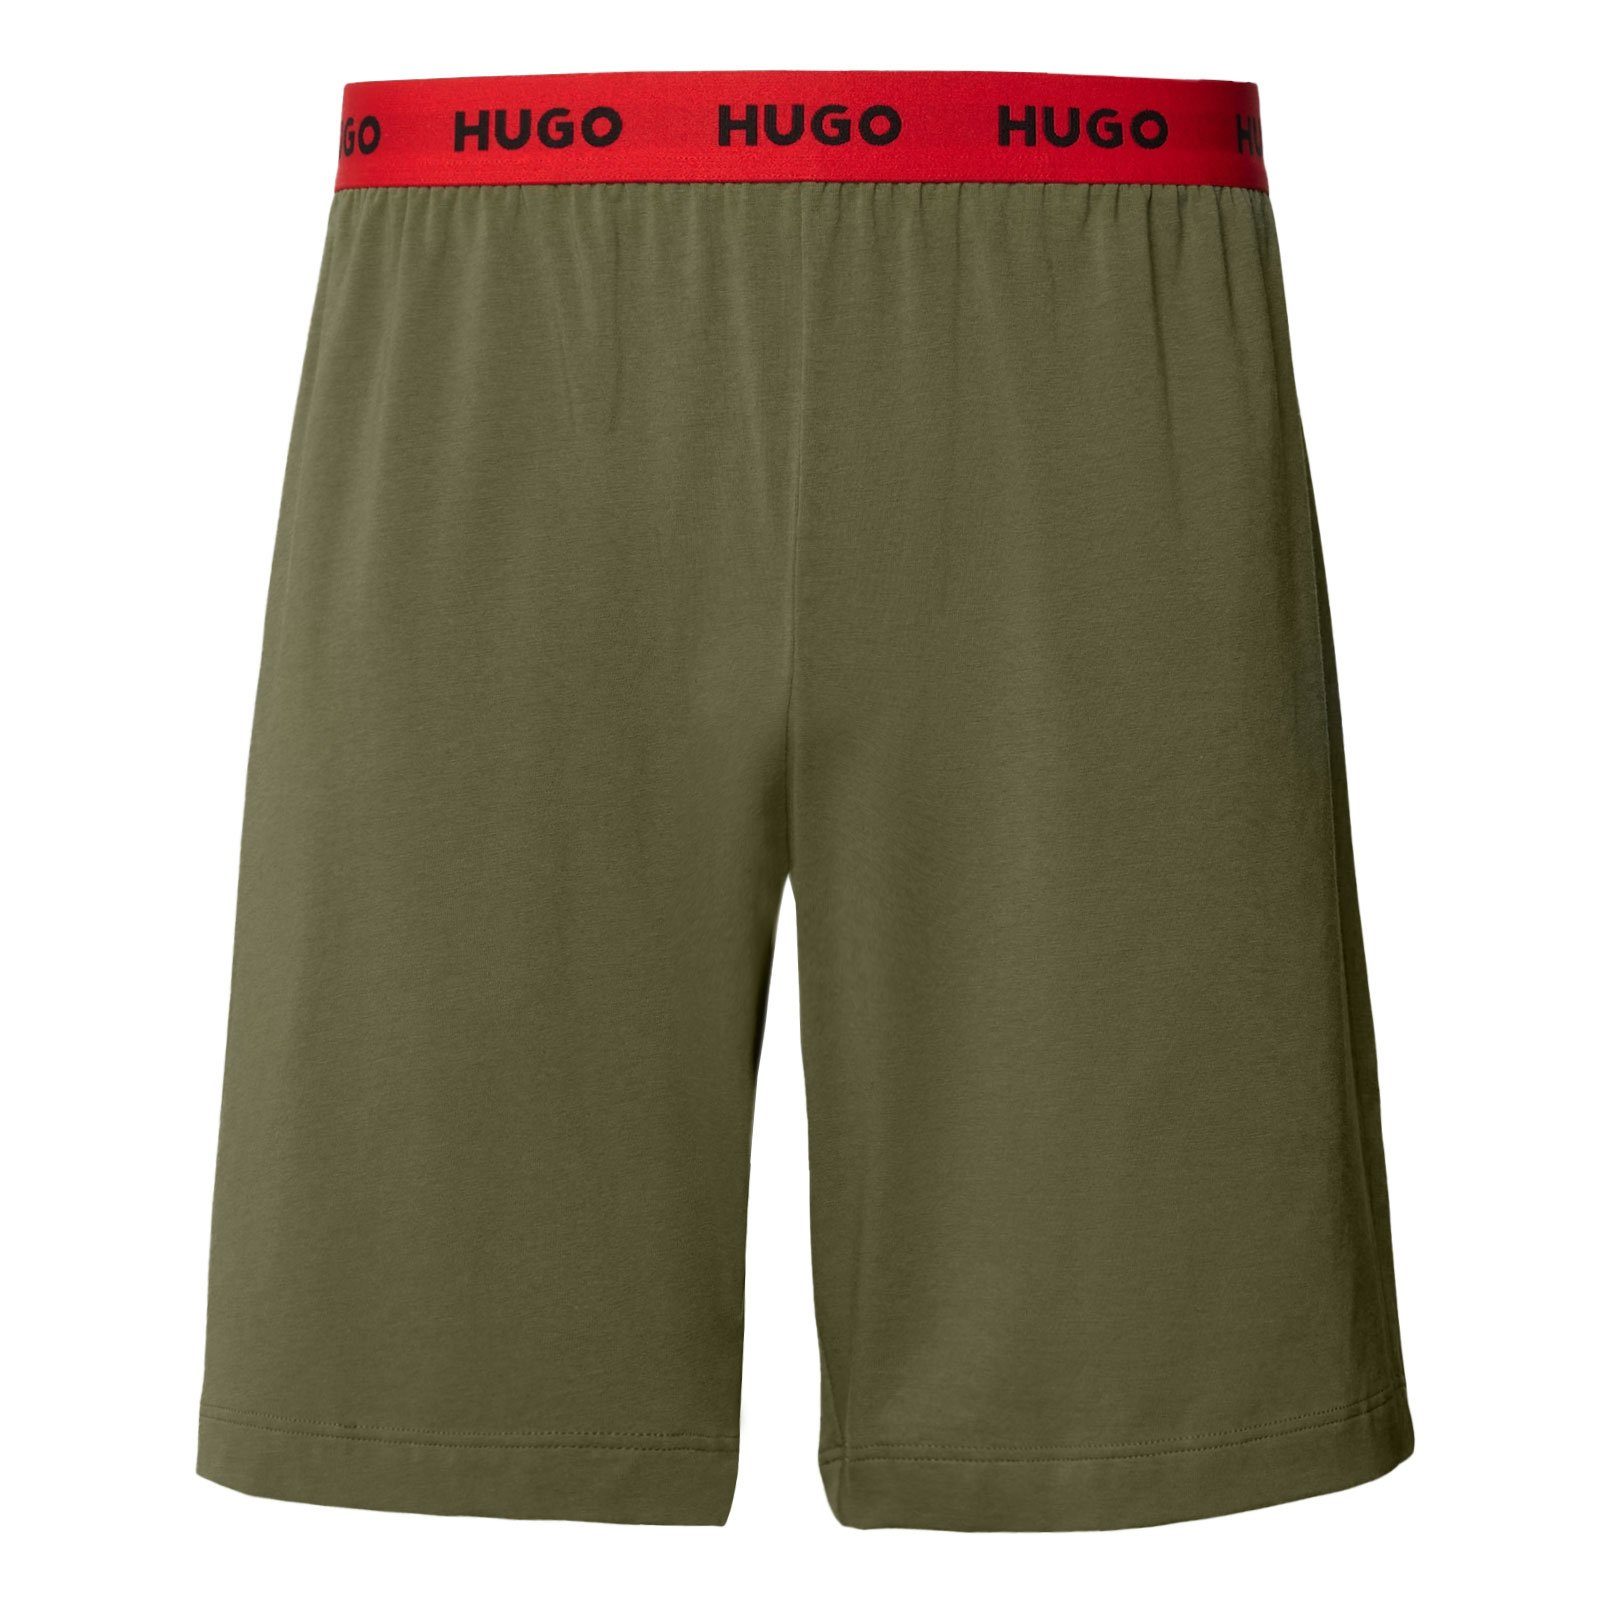 HUGO Pyjamashorts Linked Short 345 open umlaufendem Bund green am Pant Markenschriftzug mit